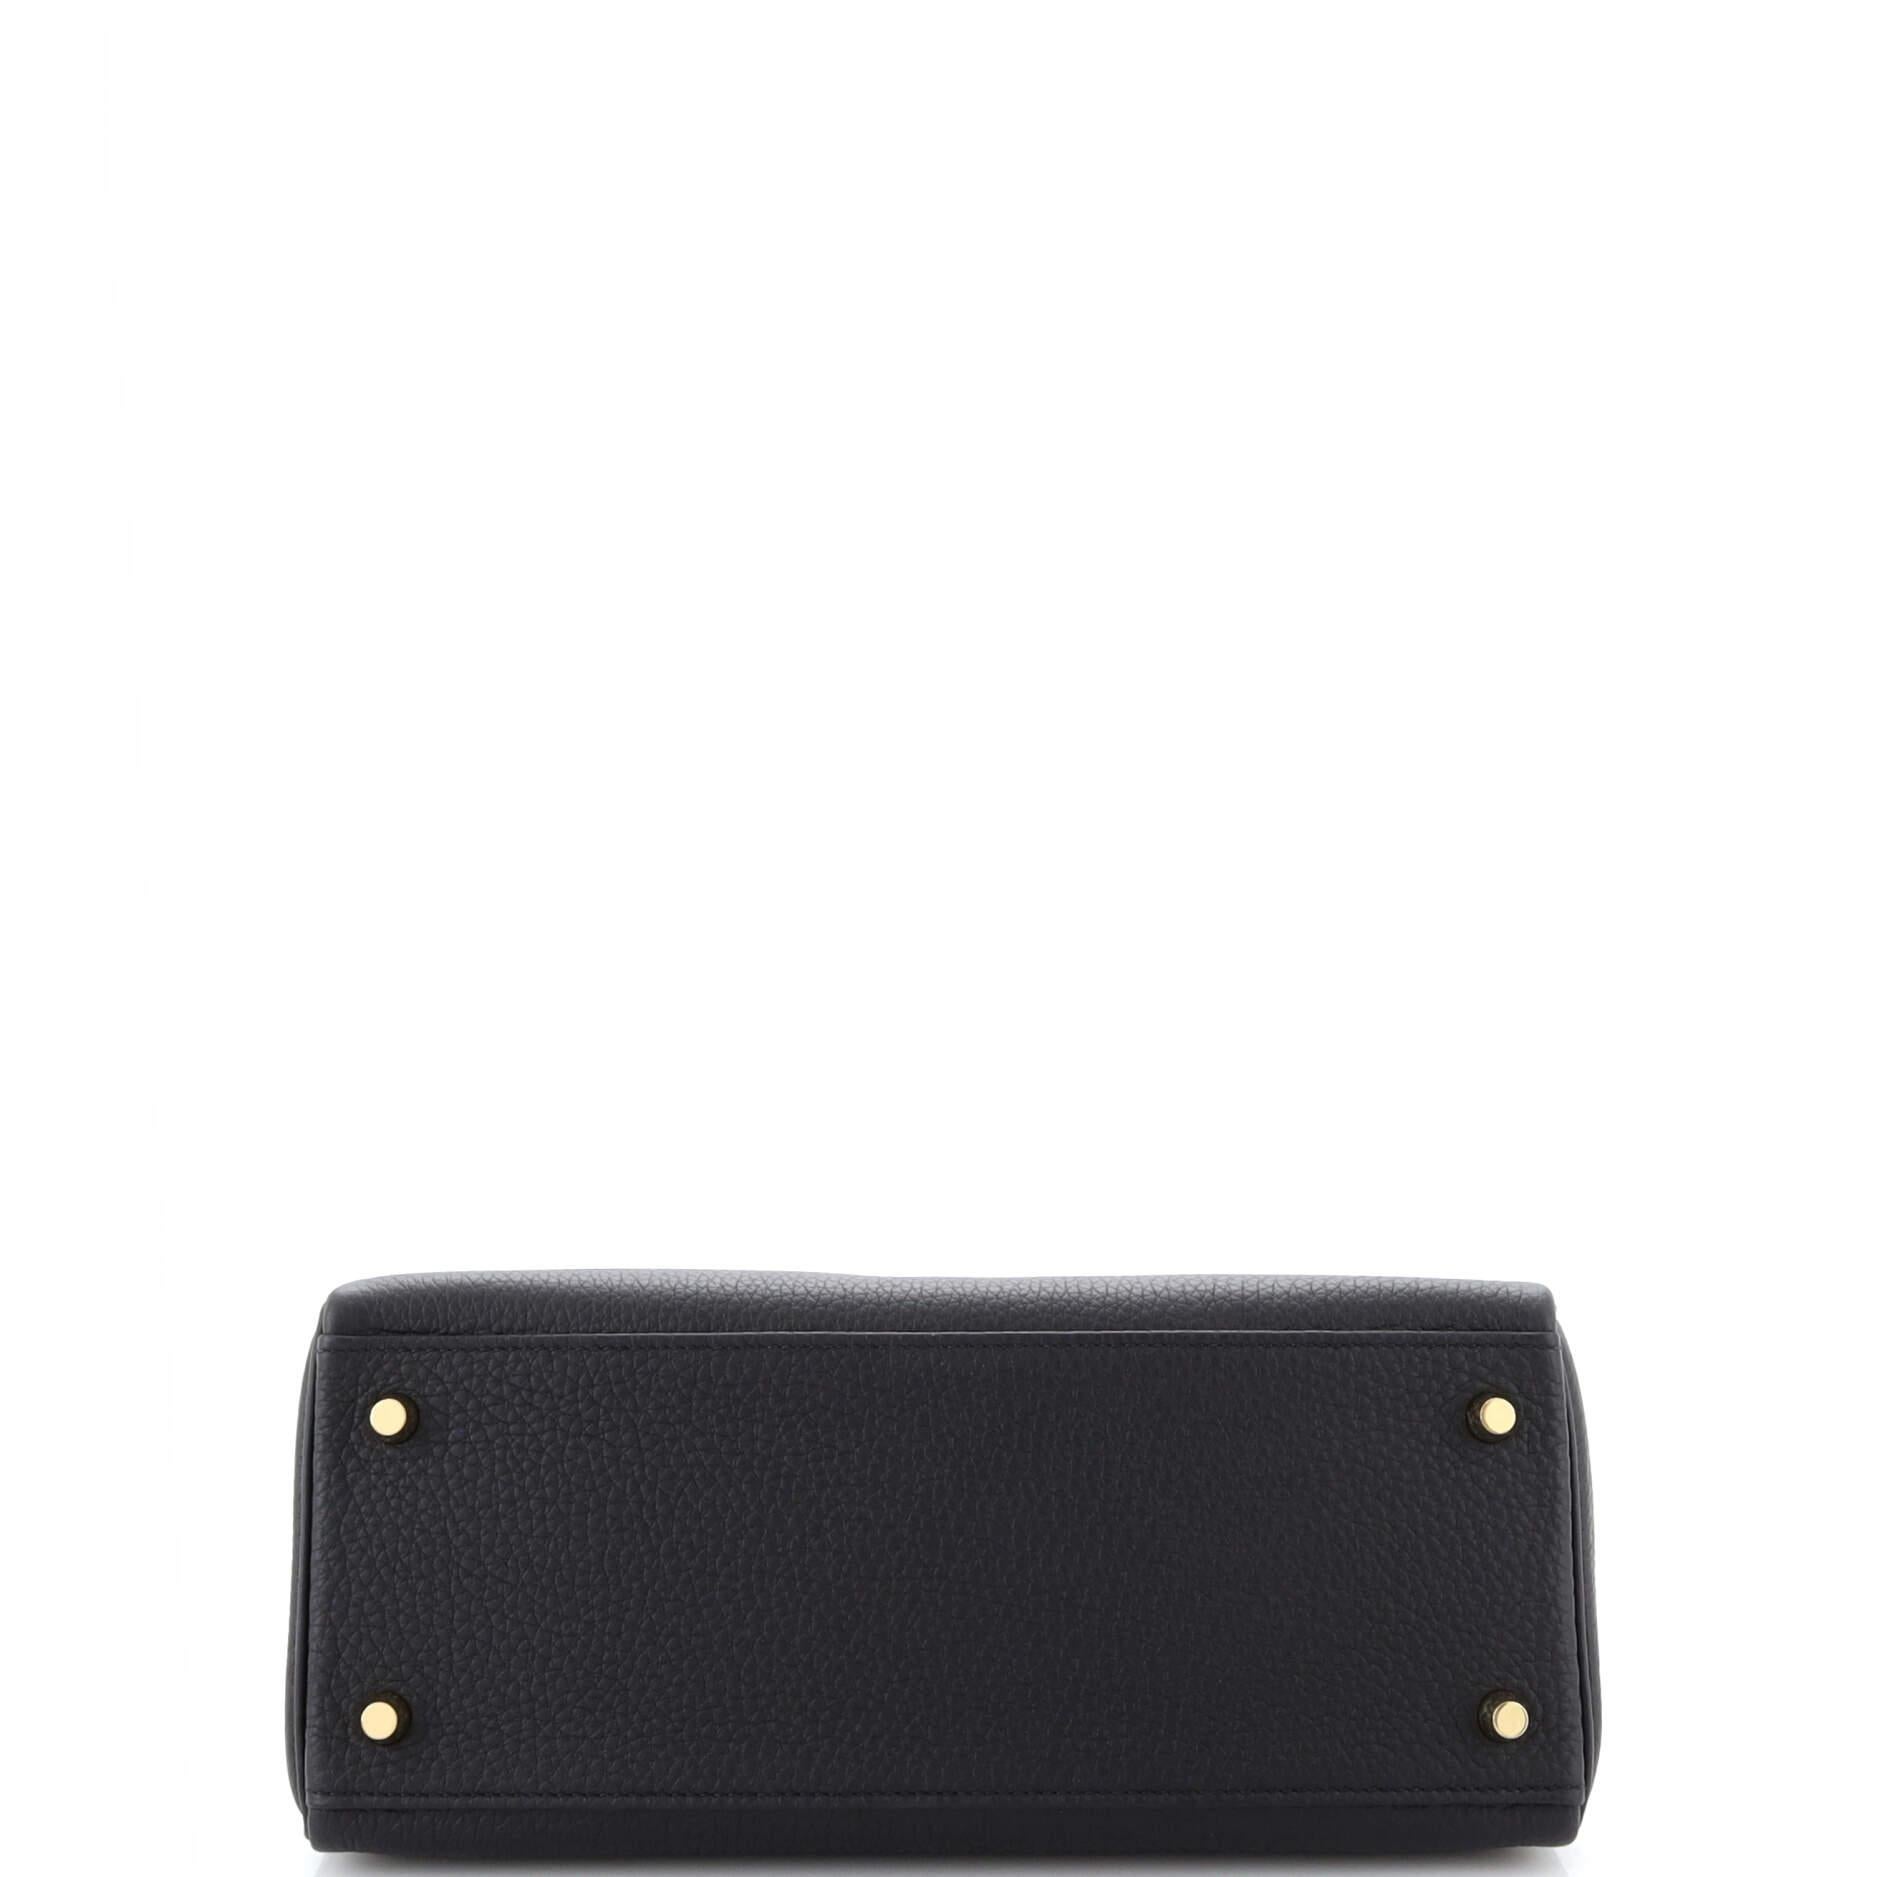 Hermes Kelly Handbag Noir Togo with Gold Hardware 28 1